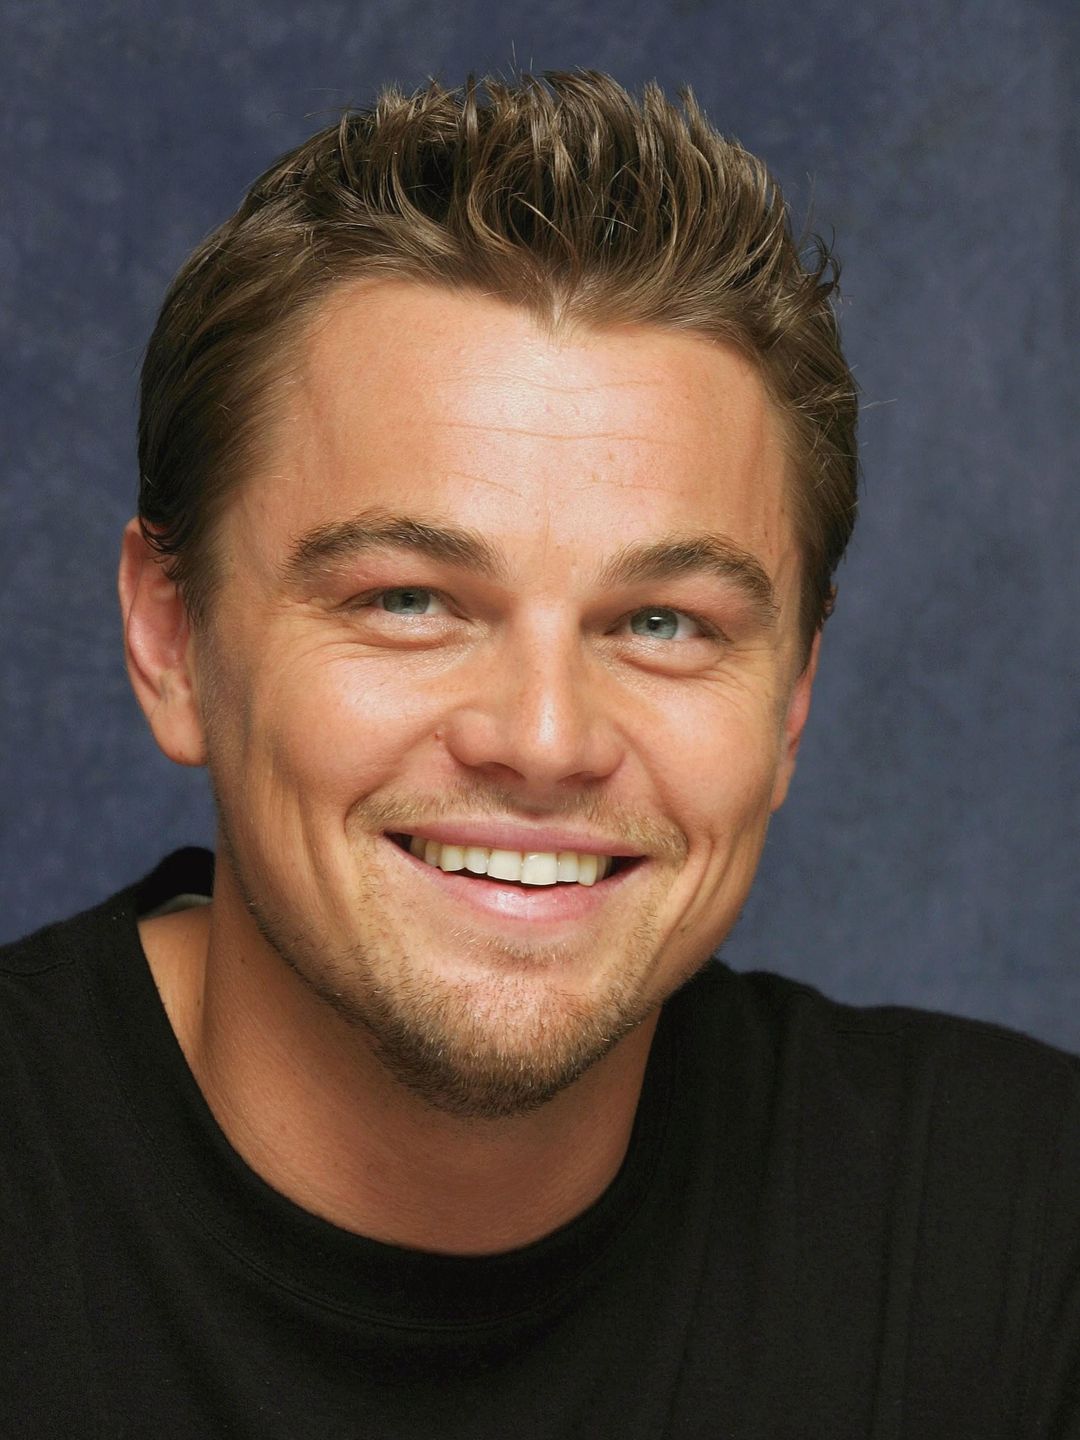 Leonardo DiCaprio story of success